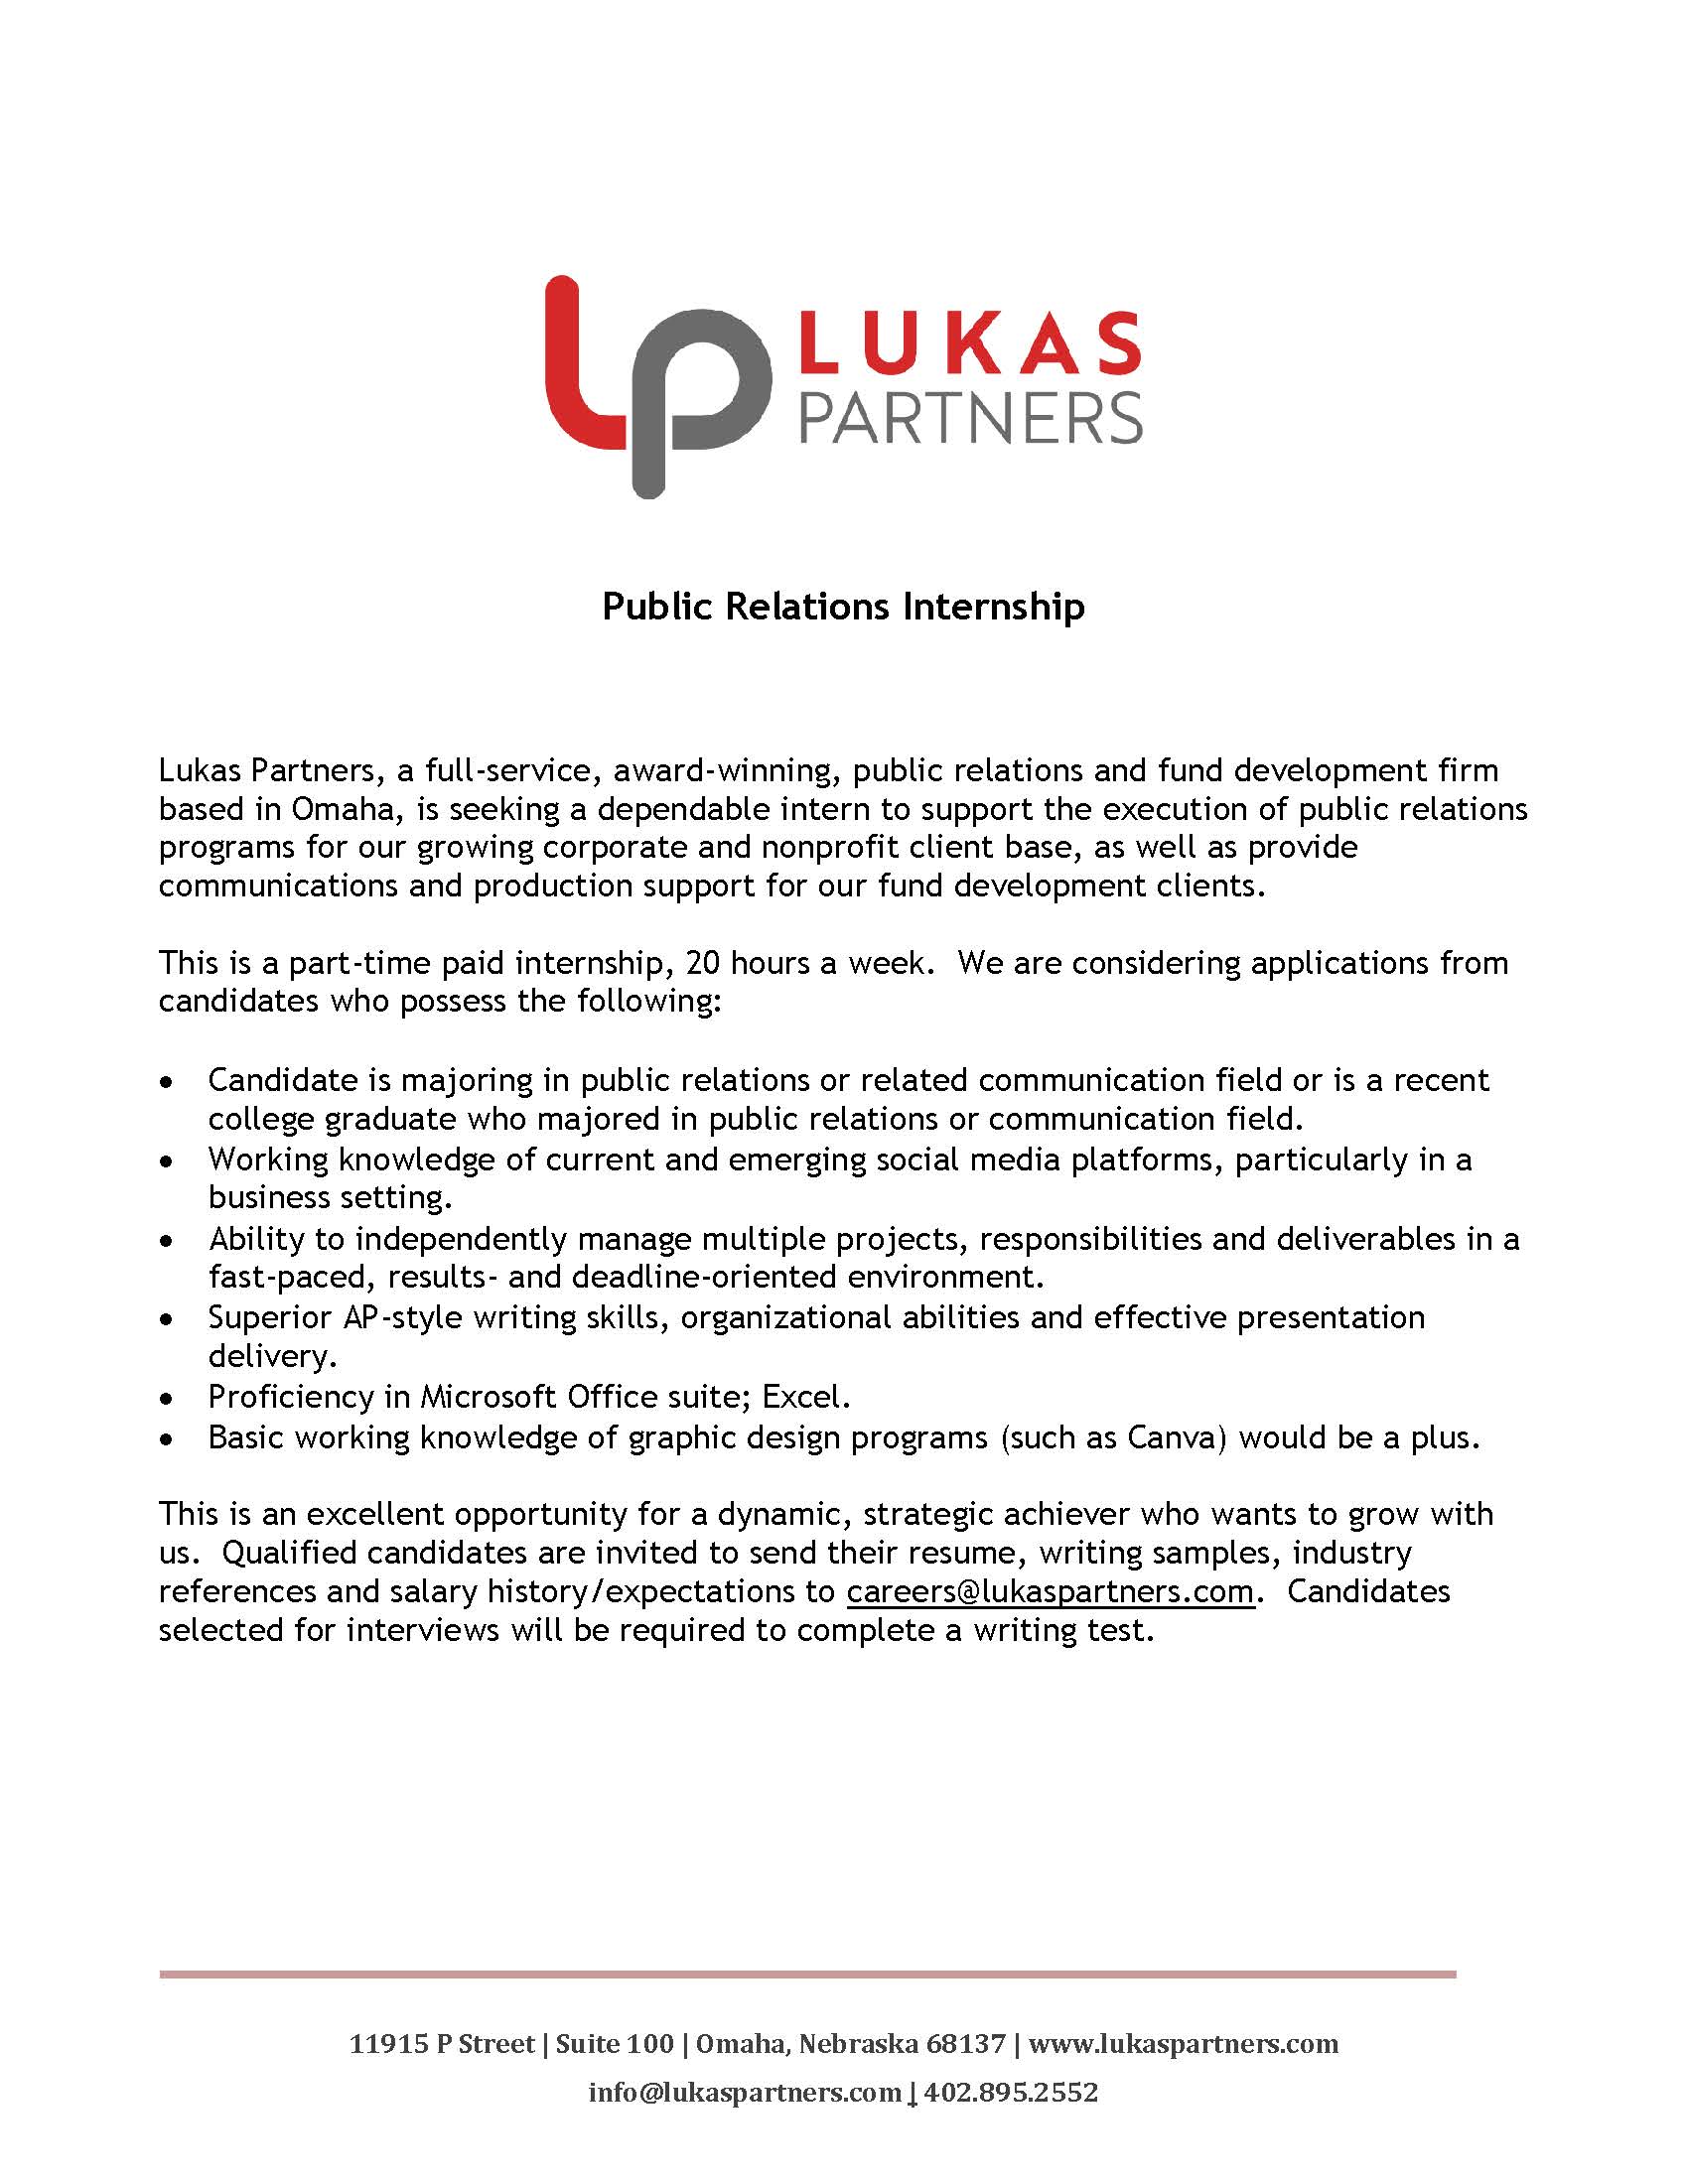 lukas-partners-public-relations-internship-2021.jpg